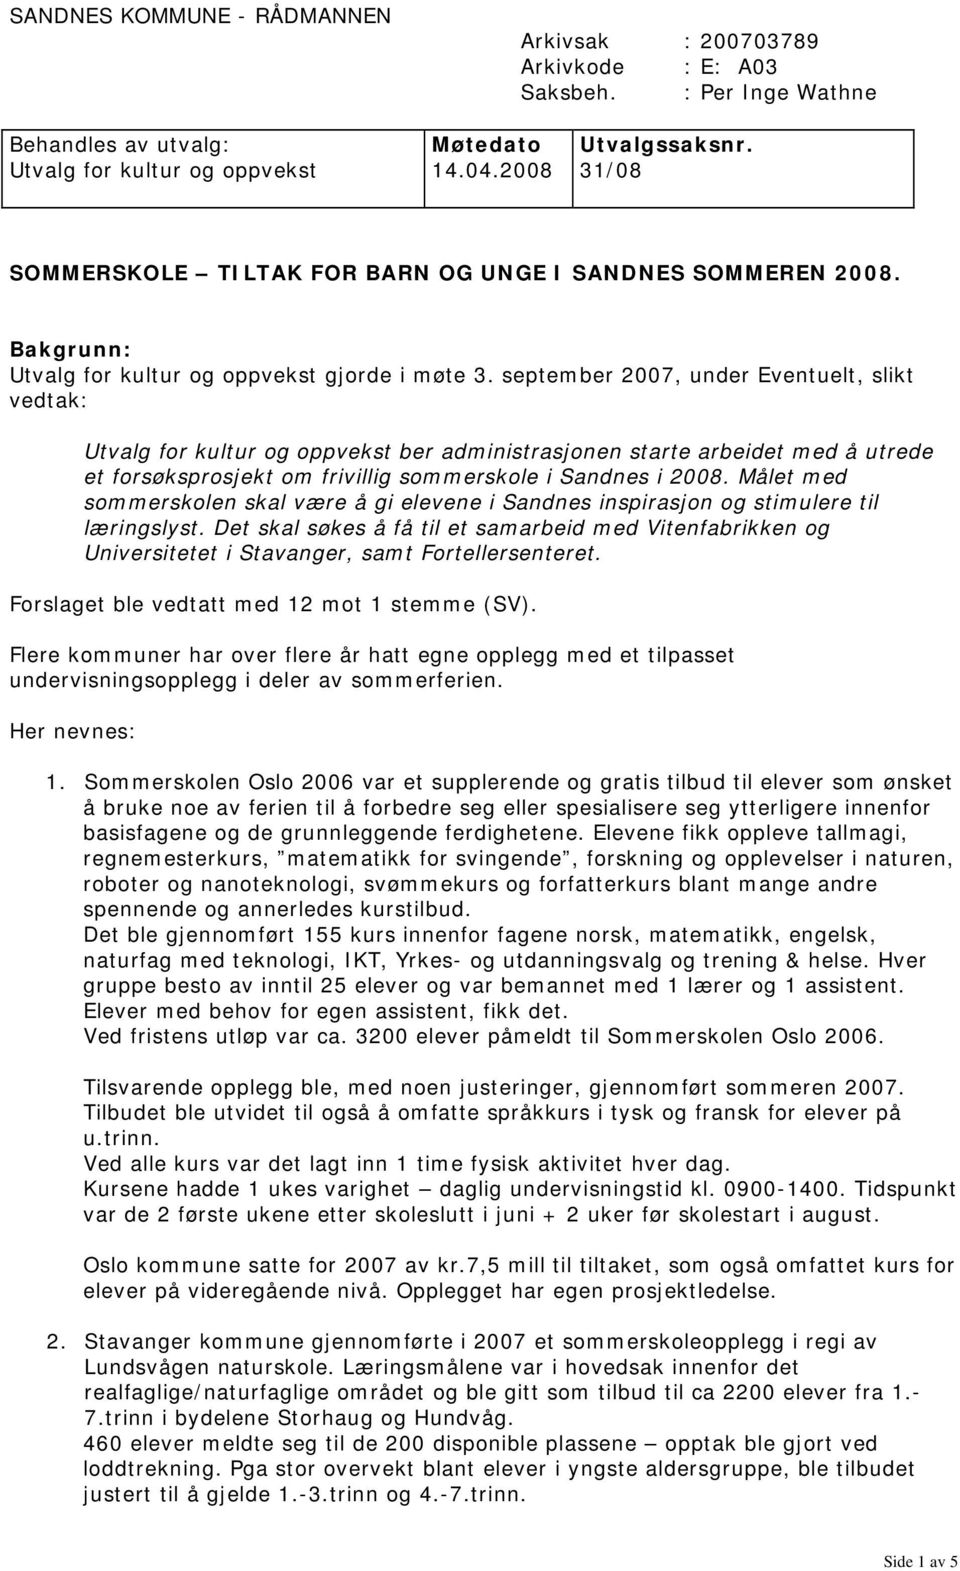 september 2007, under Eventuelt, slikt vedtak: Utvalg for kultur og oppvekst ber administrasjonen starte arbeidet med å utrede et forsøksprosjekt om frivillig sommerskole i Sandnes i 2008.